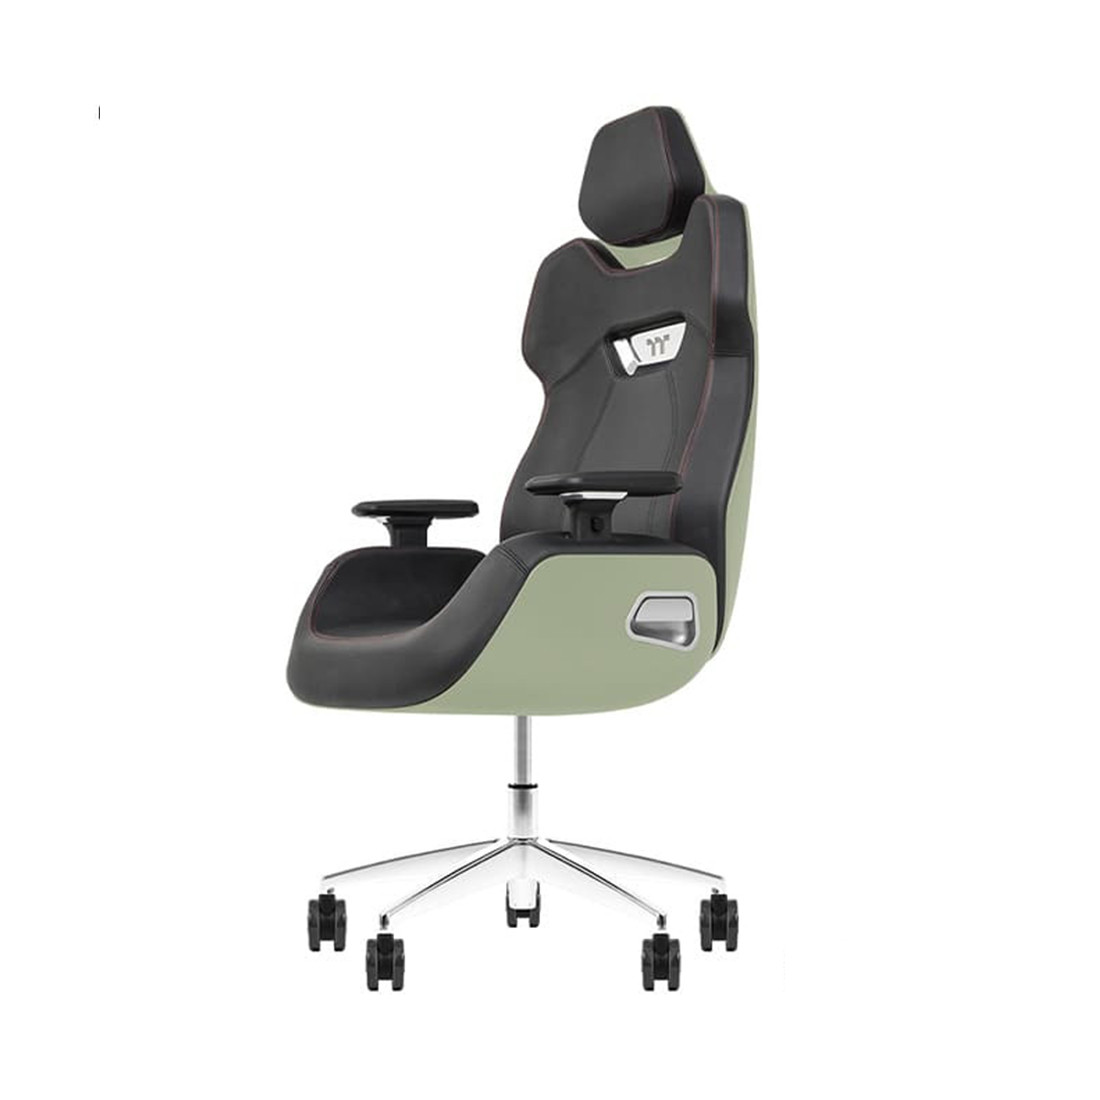 Игровое компьютерное кресло Thermaltake ARGENT E700 Matcha Green, фото 1